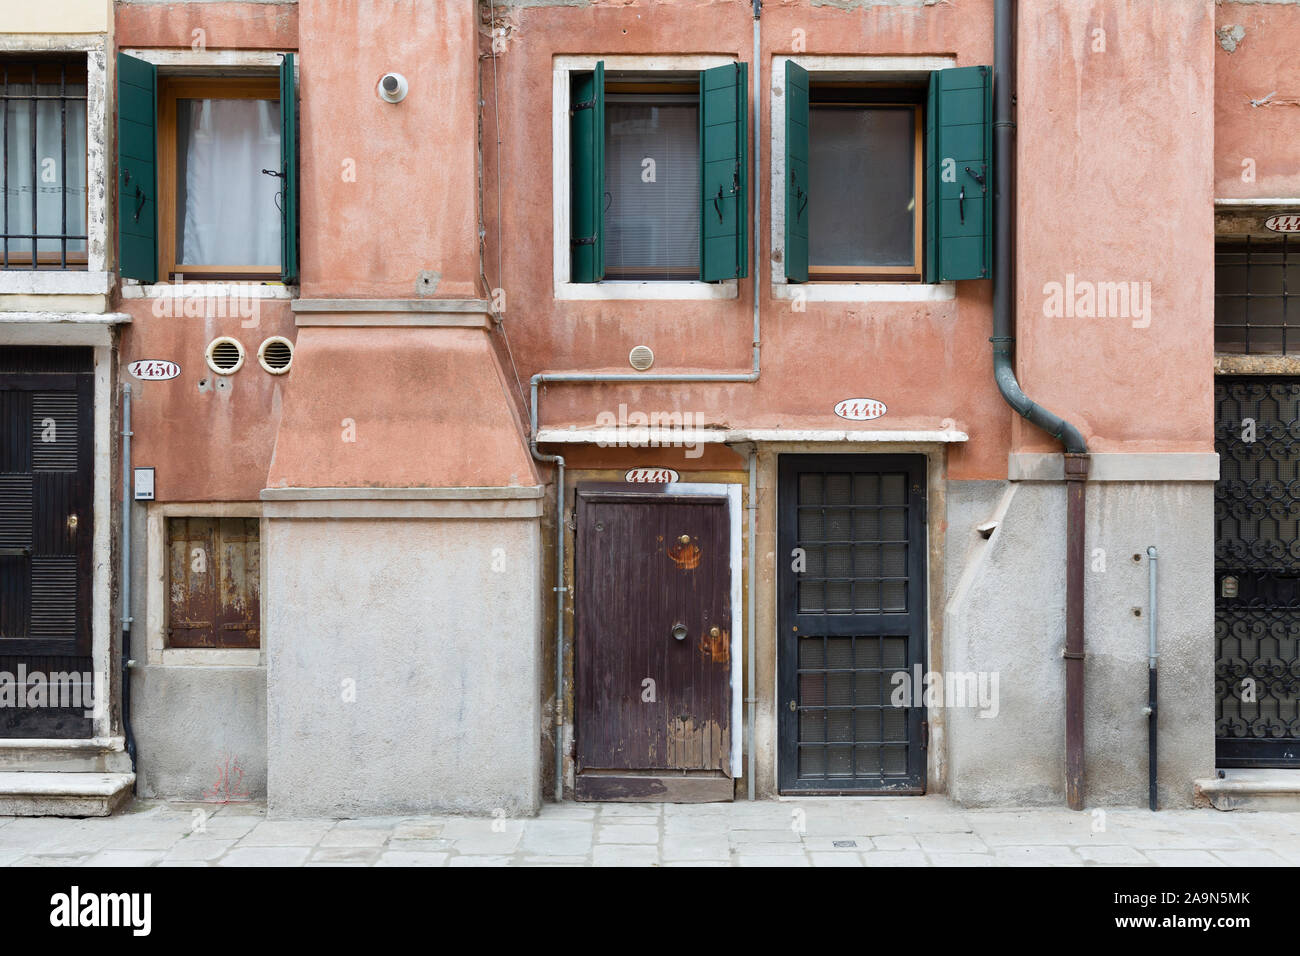 Venise, Italie - le 24 décembre 2012. Le numéro de maison au-dessus de portes avant sur une rangée de petites maisons à Venise, Italie Banque D'Images